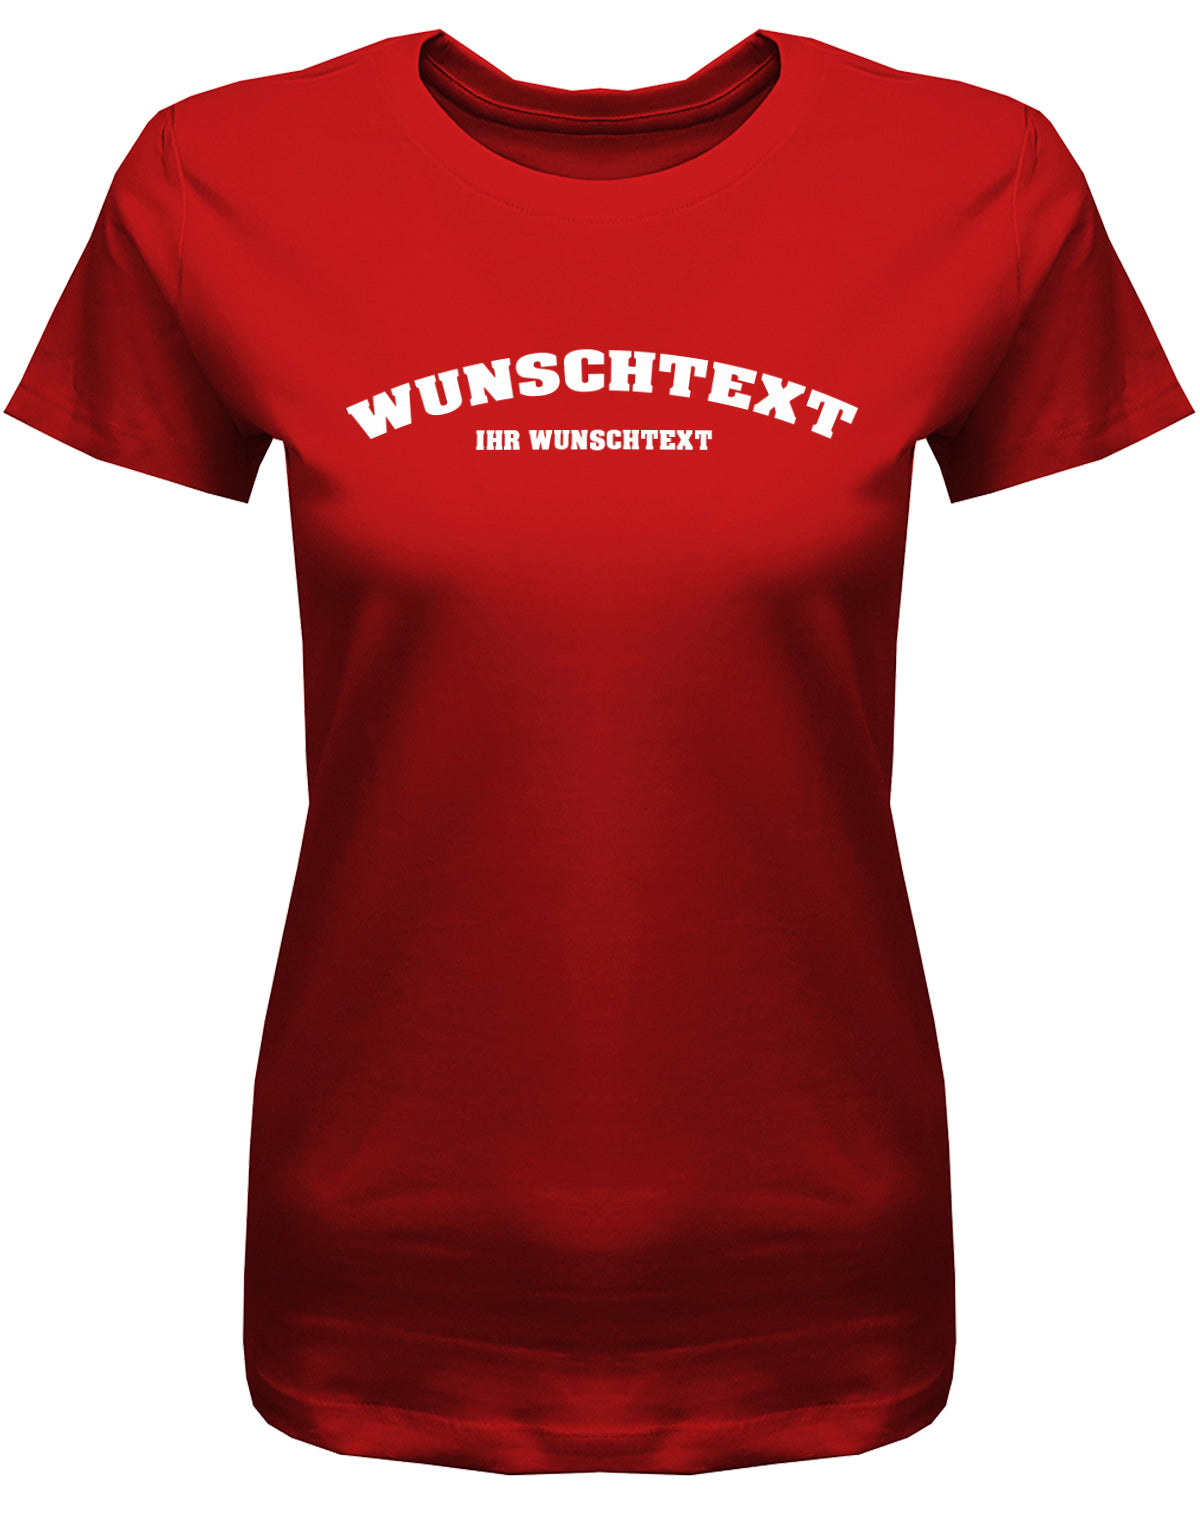 Frauen Tshirt mit Wunschtext.  Abgerundeter Text im Collage-Style. Rot